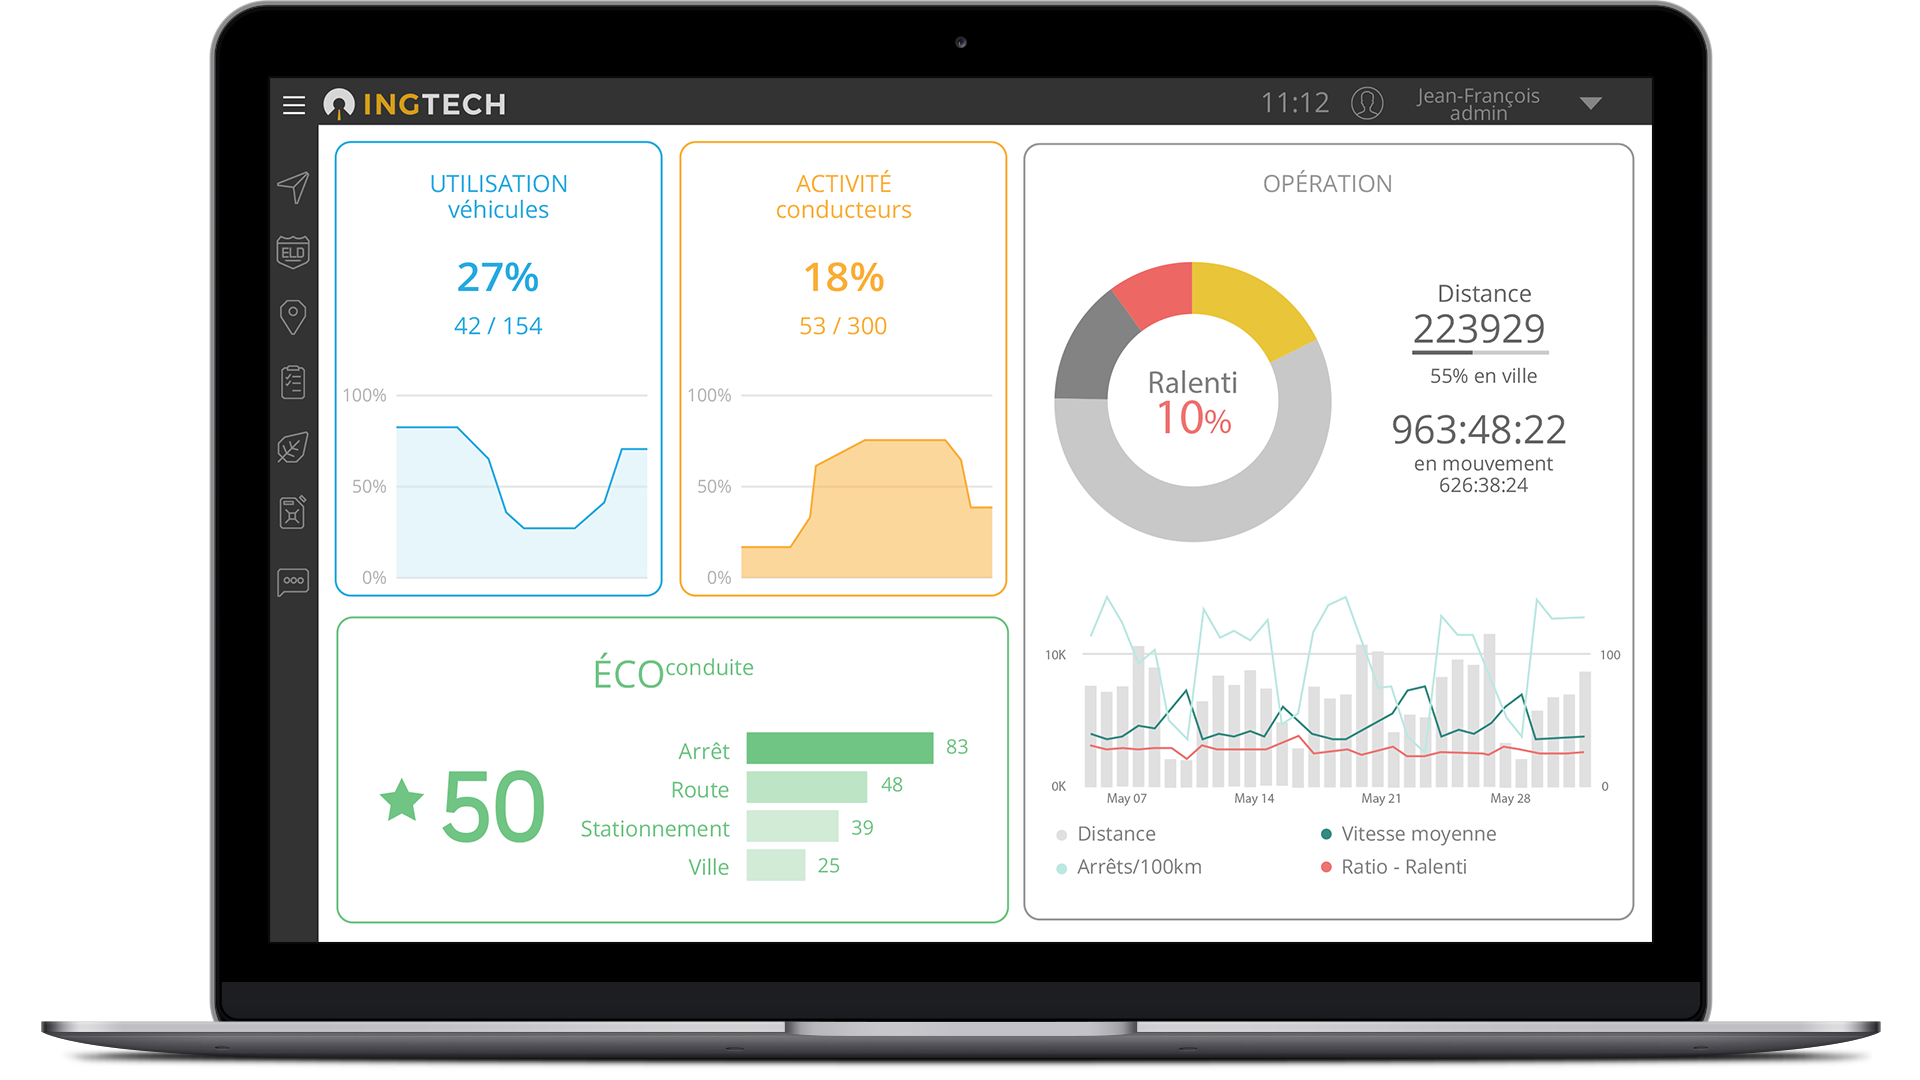 INGTech's platform dashboard screenshot